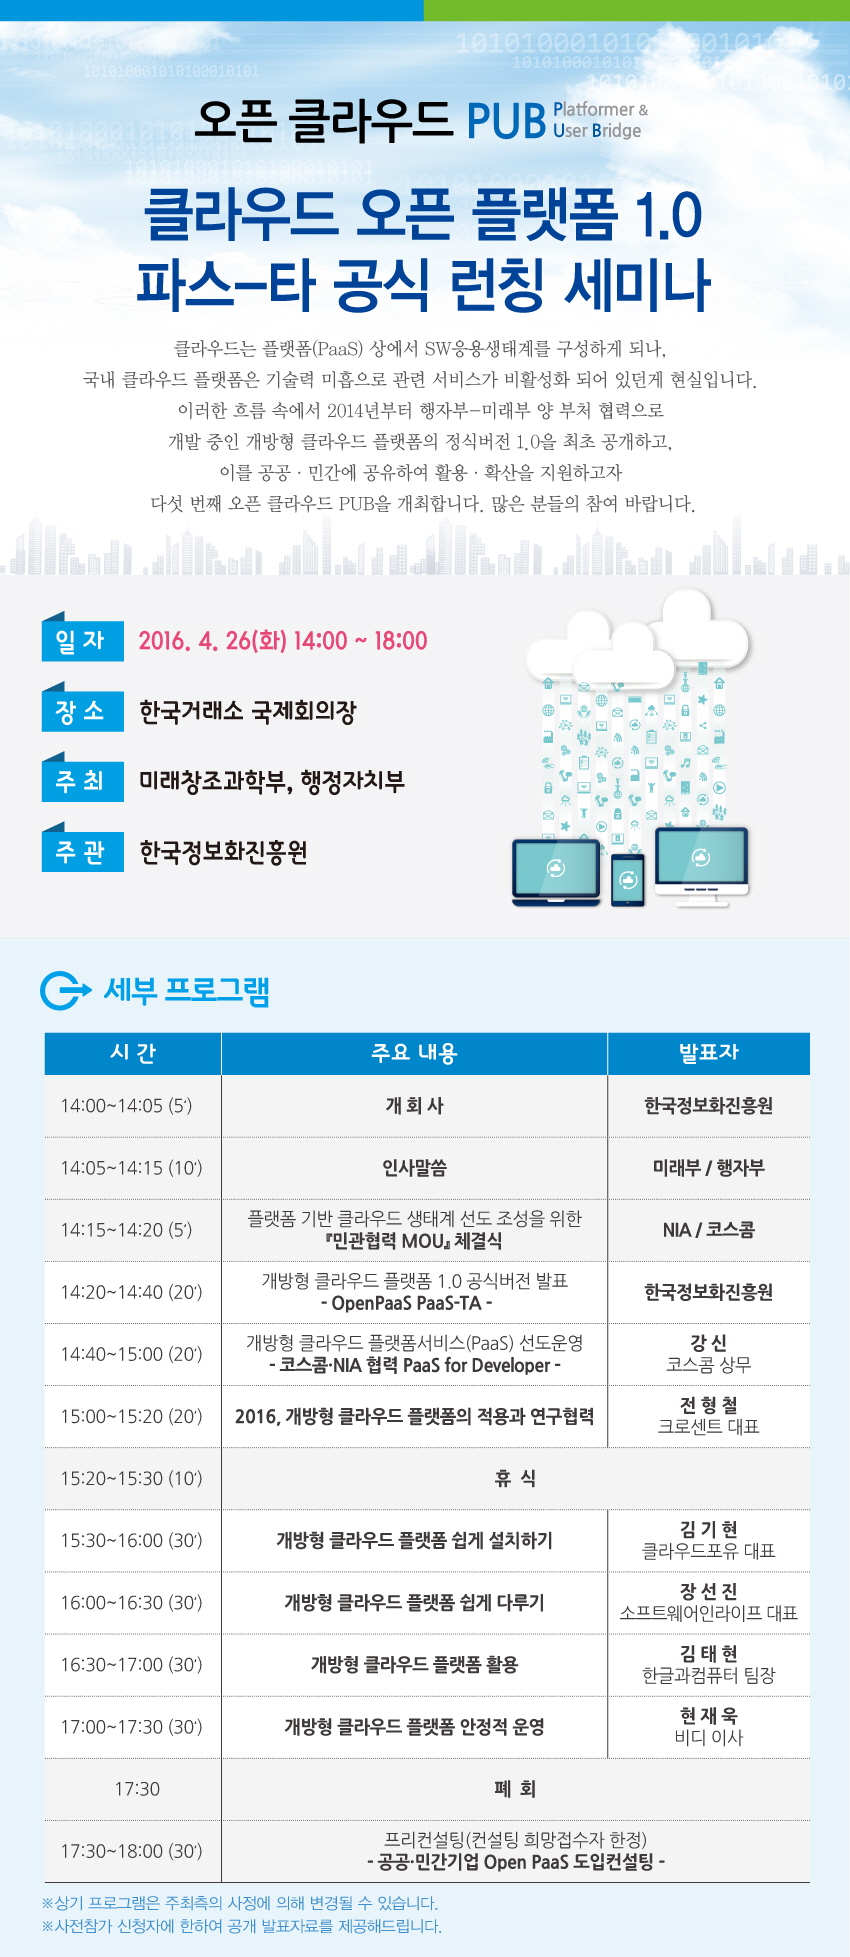 클라우드 오픈 플랫폼 1.0 파스-타 공식 런칭 세미나 2016년 4월 26일 화요일 14:00~18:00, 한국거래소 국제회의장